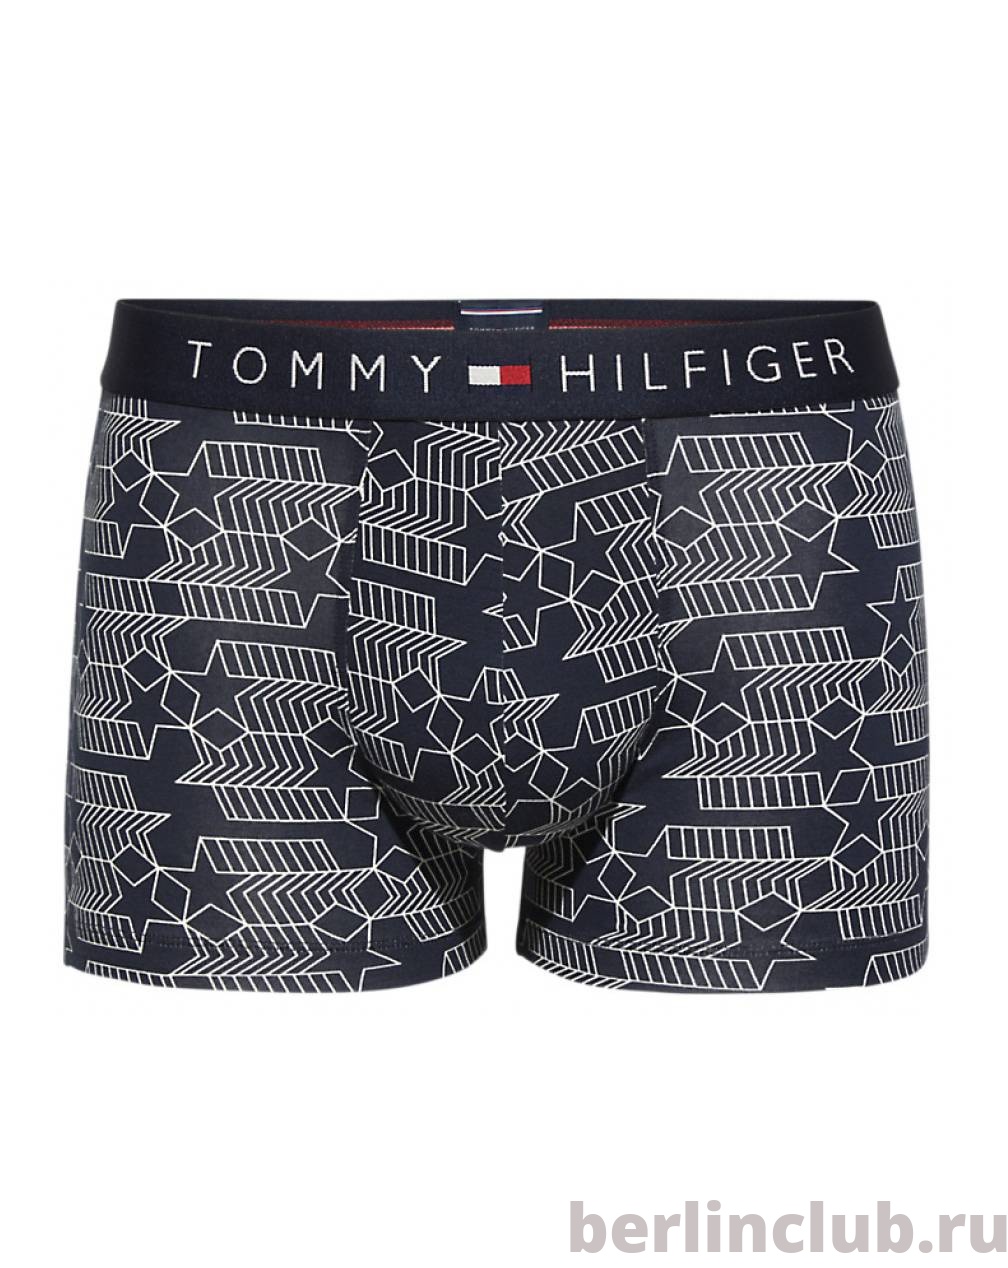 Модные Трусы Tommy Hilfiger Stars - купить с доставкой по России, оплата при получении